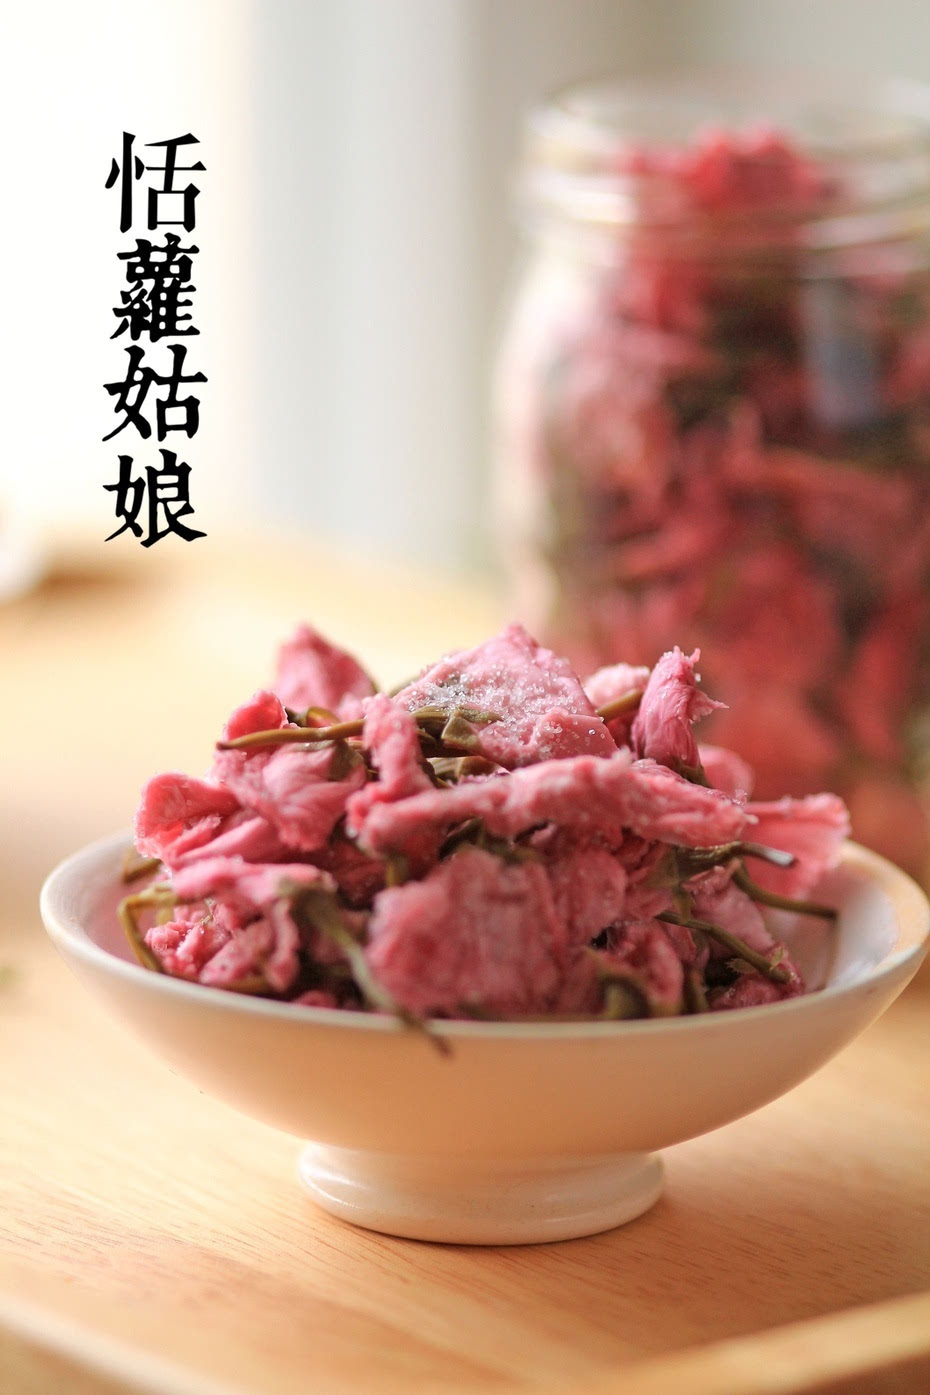 【春意】盐渍樱花:餐桌盛放一季的樱花粉嫩